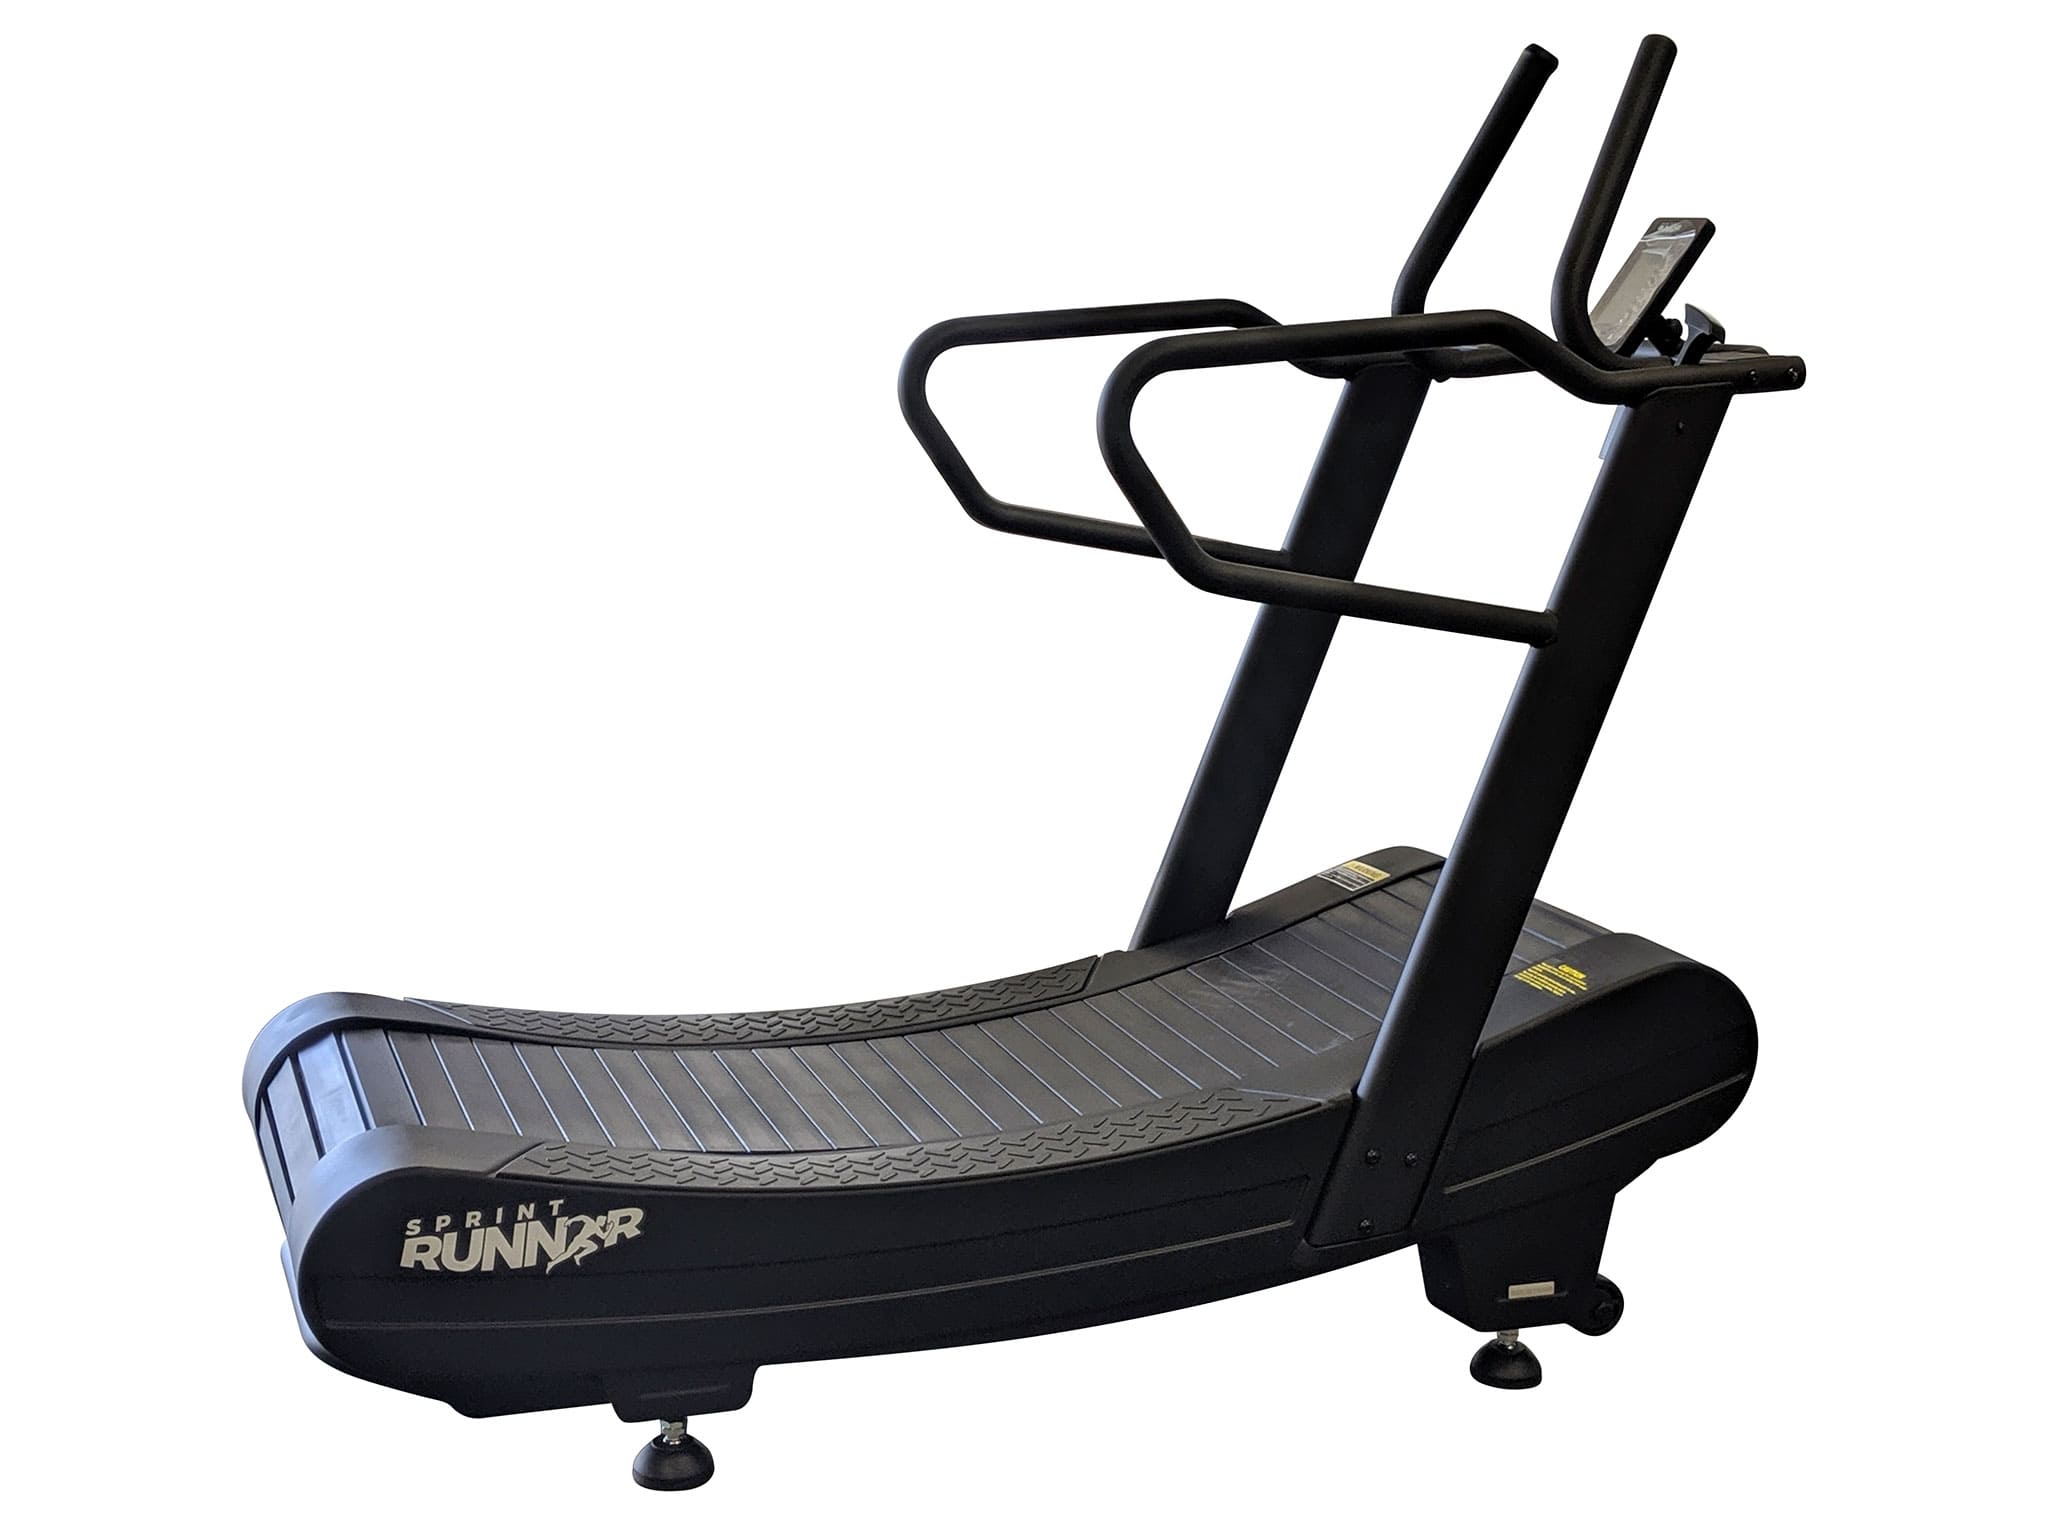 New SprintRunner SR2500 Treadmill